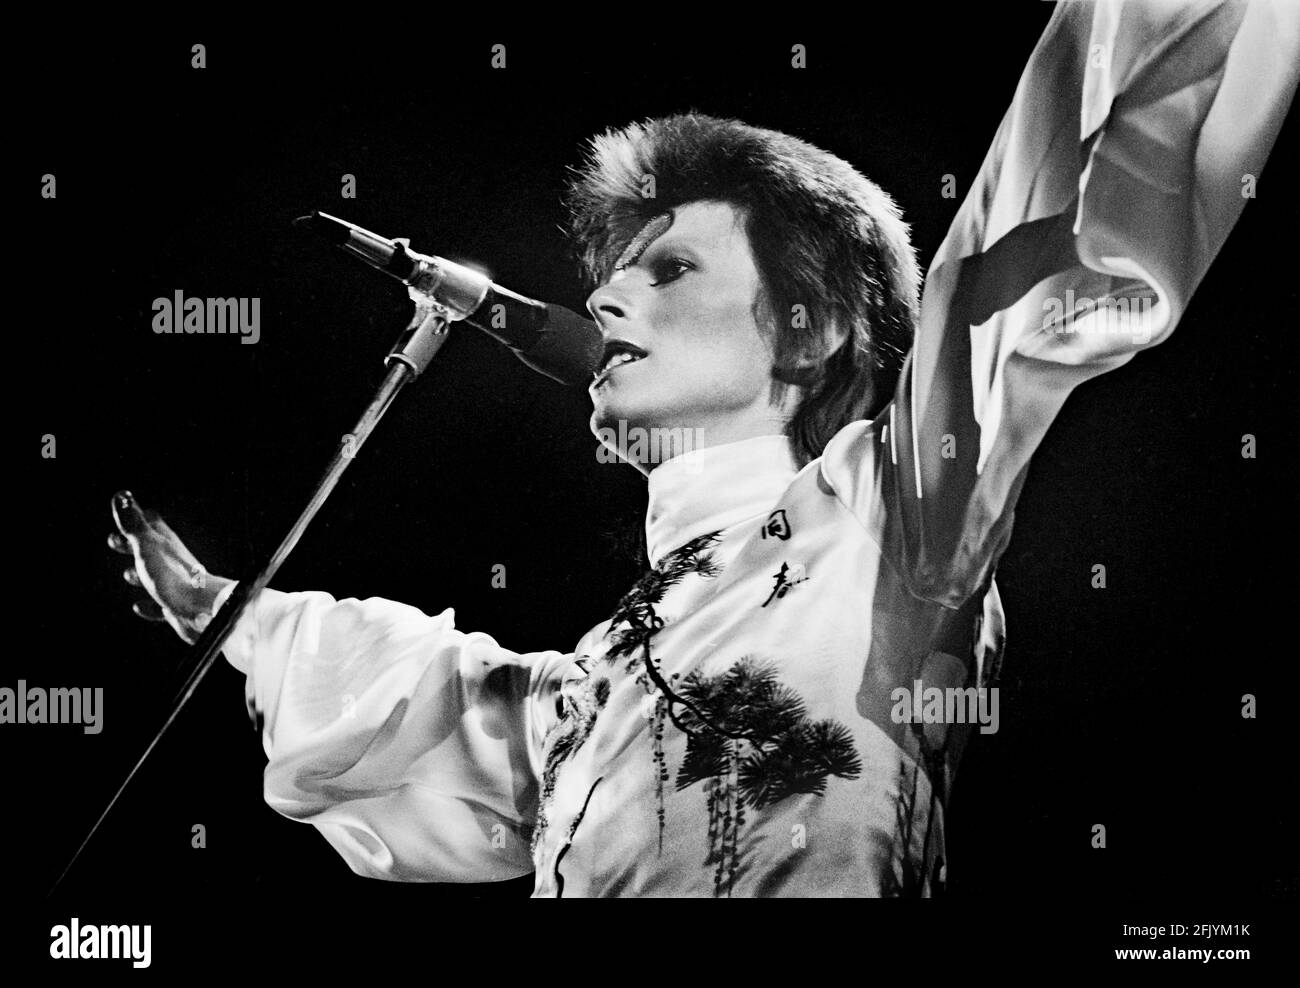 LONDRES : David Bowie se produit en direct sur scène au Earls court Arena le 12 1973 mai lors de la visite Ziggy Stardust (photo de Gijsbert Hanekroot) Banque D'Images